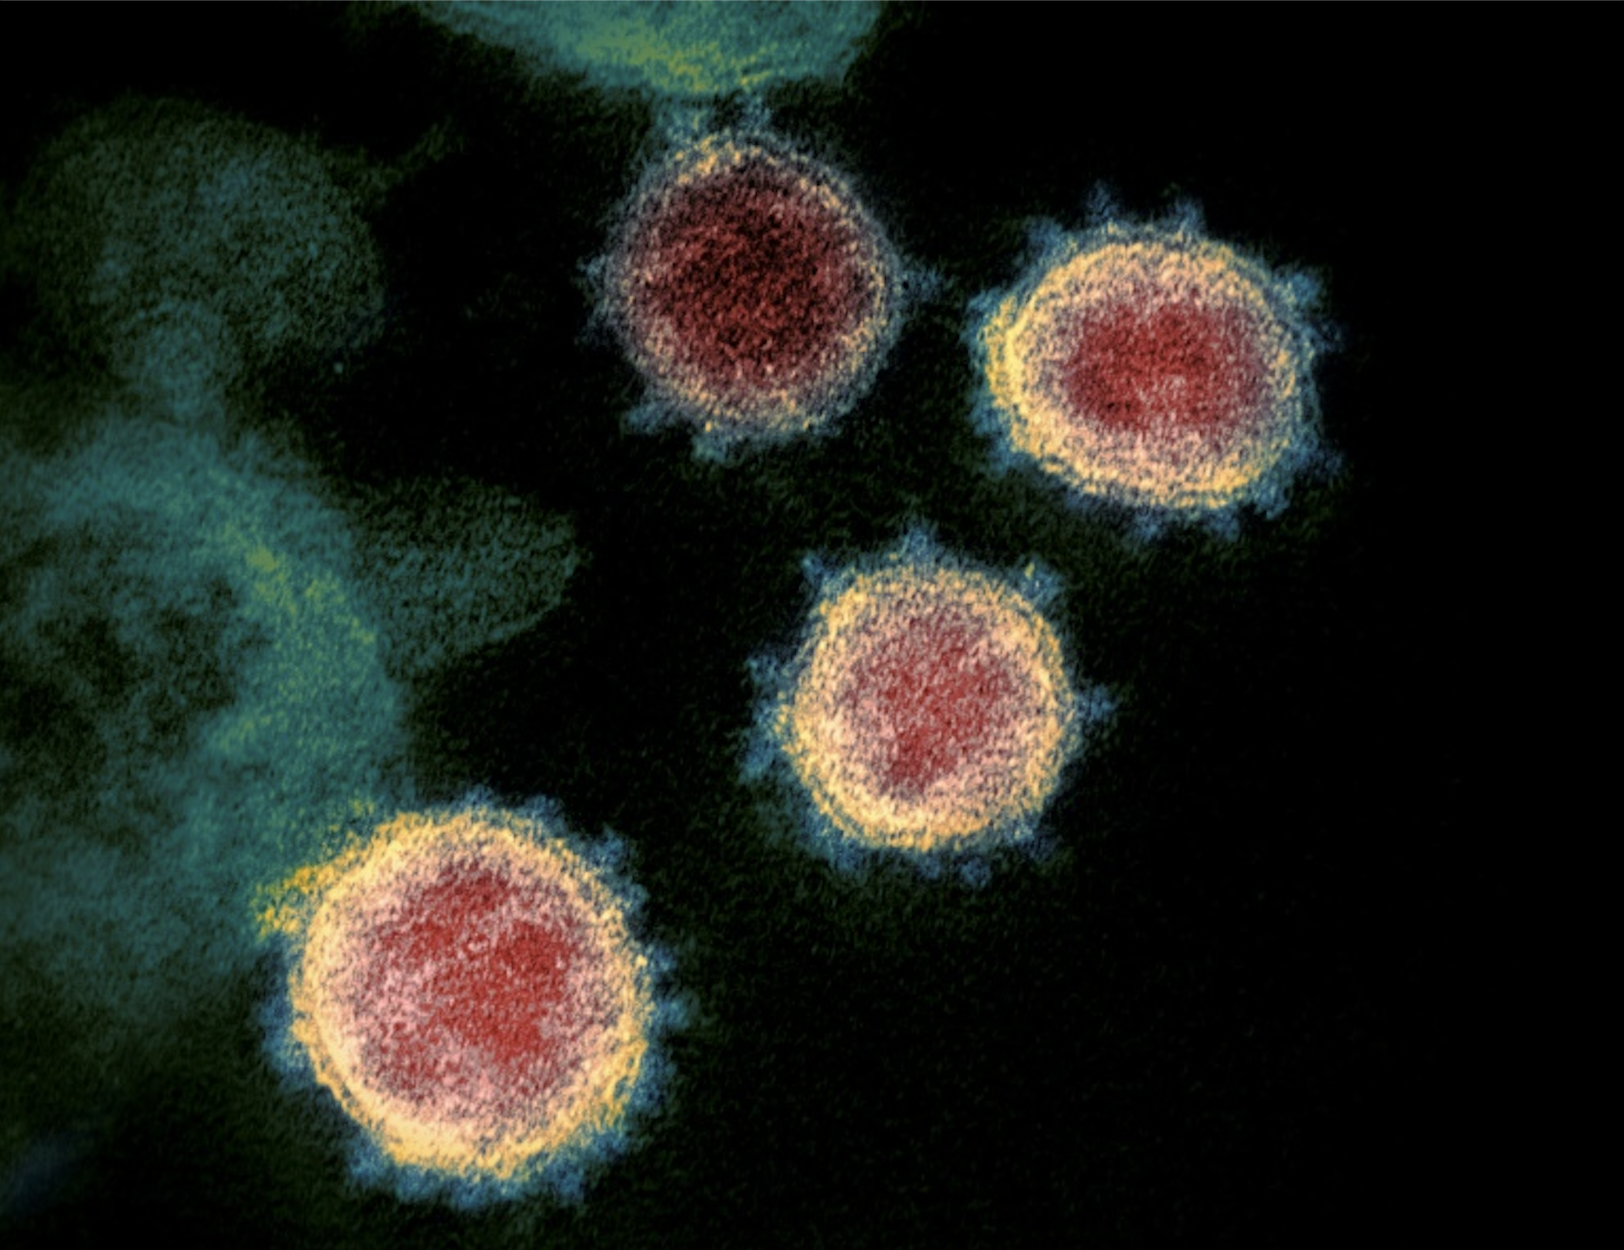 Le coronavirus SARS-CoV-2 infecte les cellules par l'intermédiaire de deux protéines cellulaires ACE2 et TMPRSS2. © Handout, National Institute of Health, AFP Archive